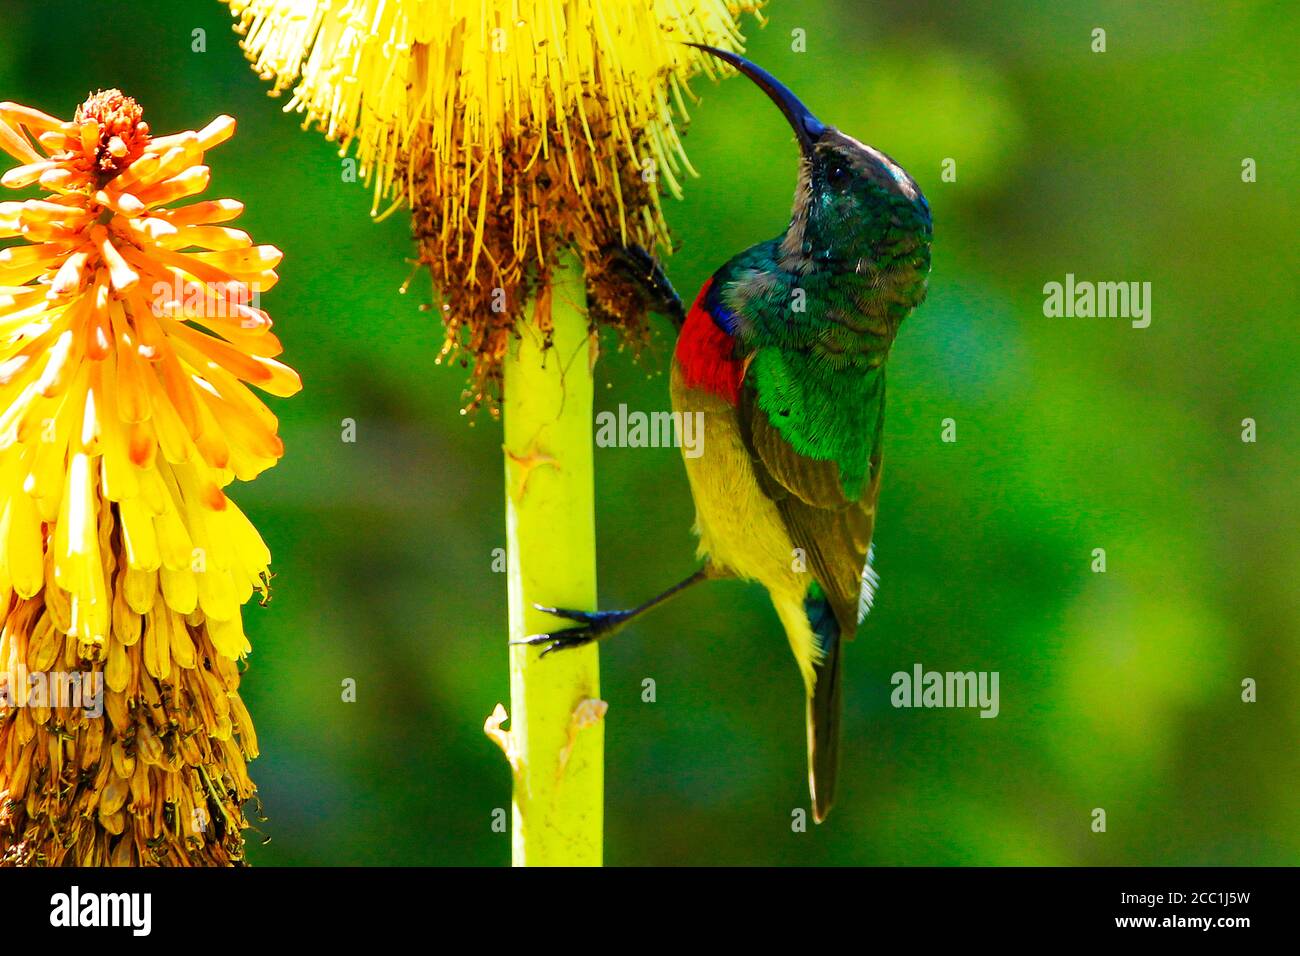 Un sunbird à double col du sud mâle grimpant sur la tige d'une fleur pour atteindre les fleurs afin de se nourrir sur le nectar. Banque D'Images